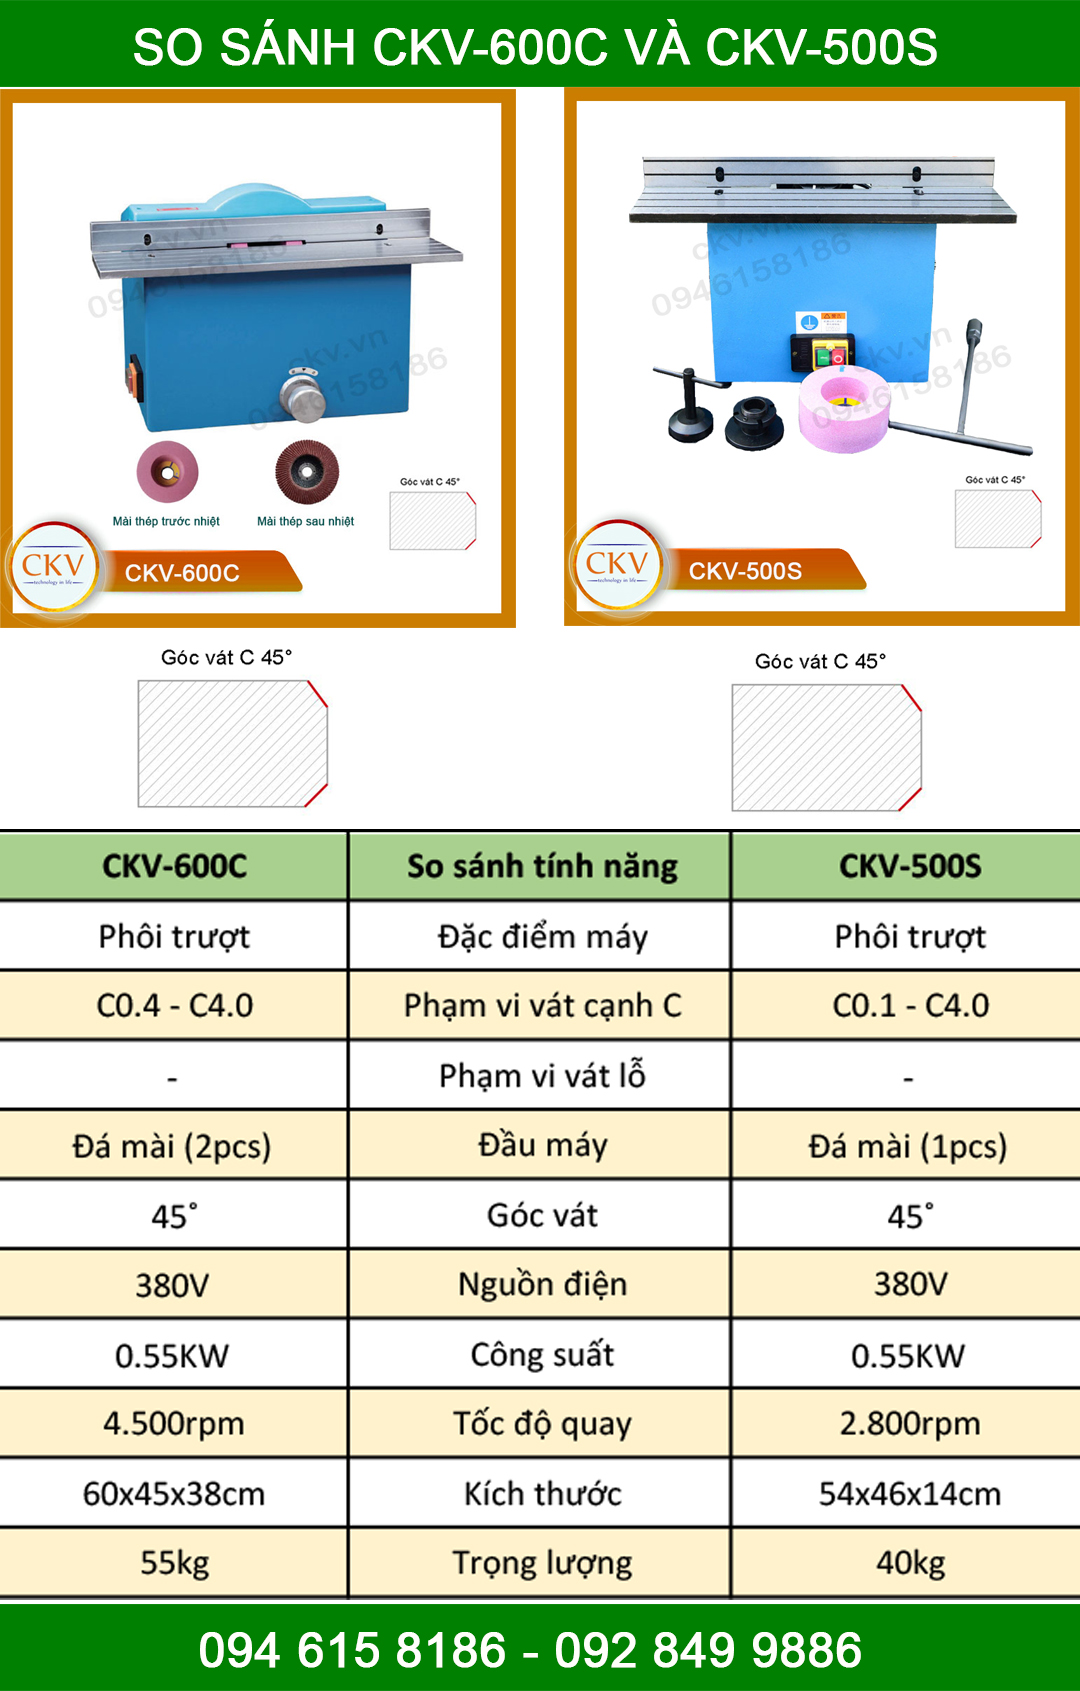 So sánh CKV-600C với CKV-500S